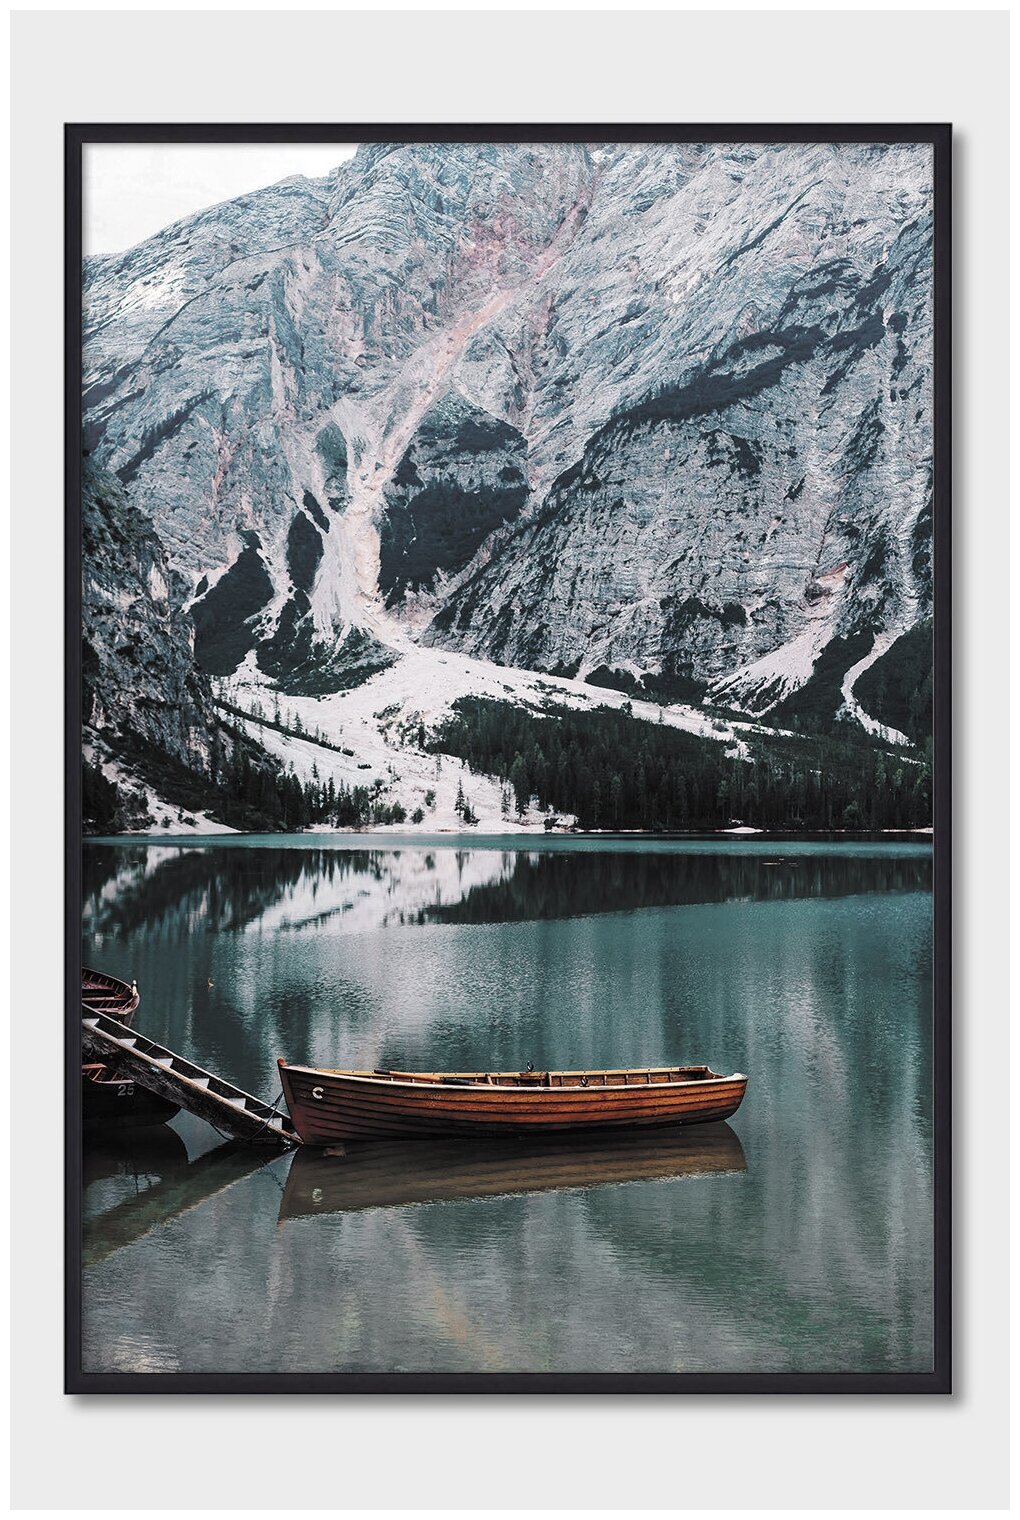 Постер на стену для интерьера Postermarkt Лодка на озере, постер в черной рамке 40х50 см, постеры картины для интерьера в черной рамке